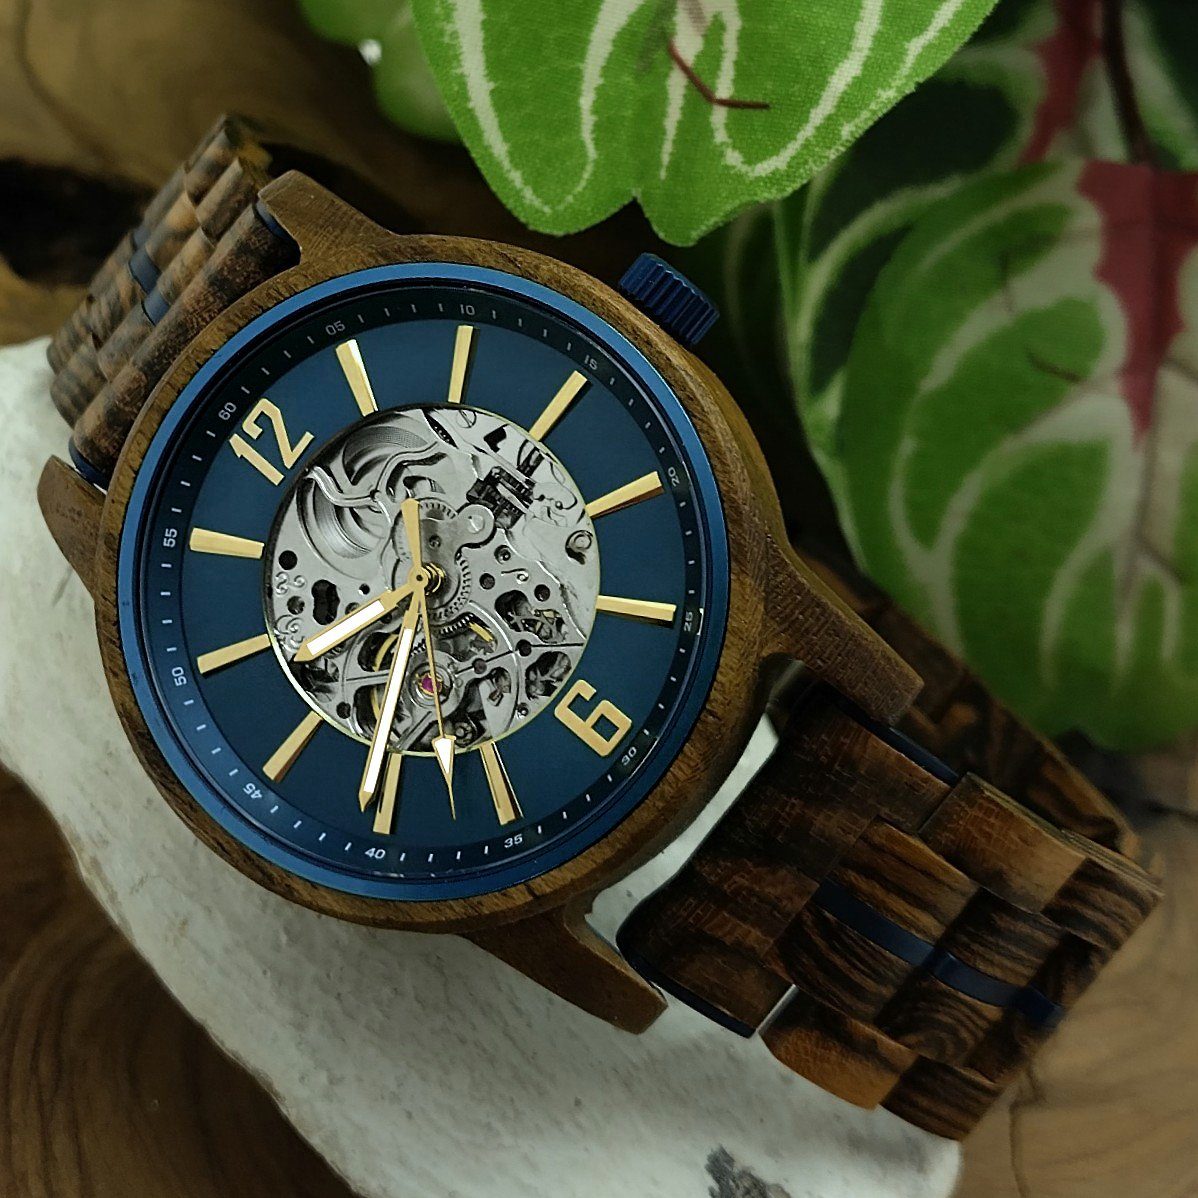 Holzwerk Automatikuhr CRIVITZ Herren Uhr in braun, Holz gold Armband blau, Edelstahl &